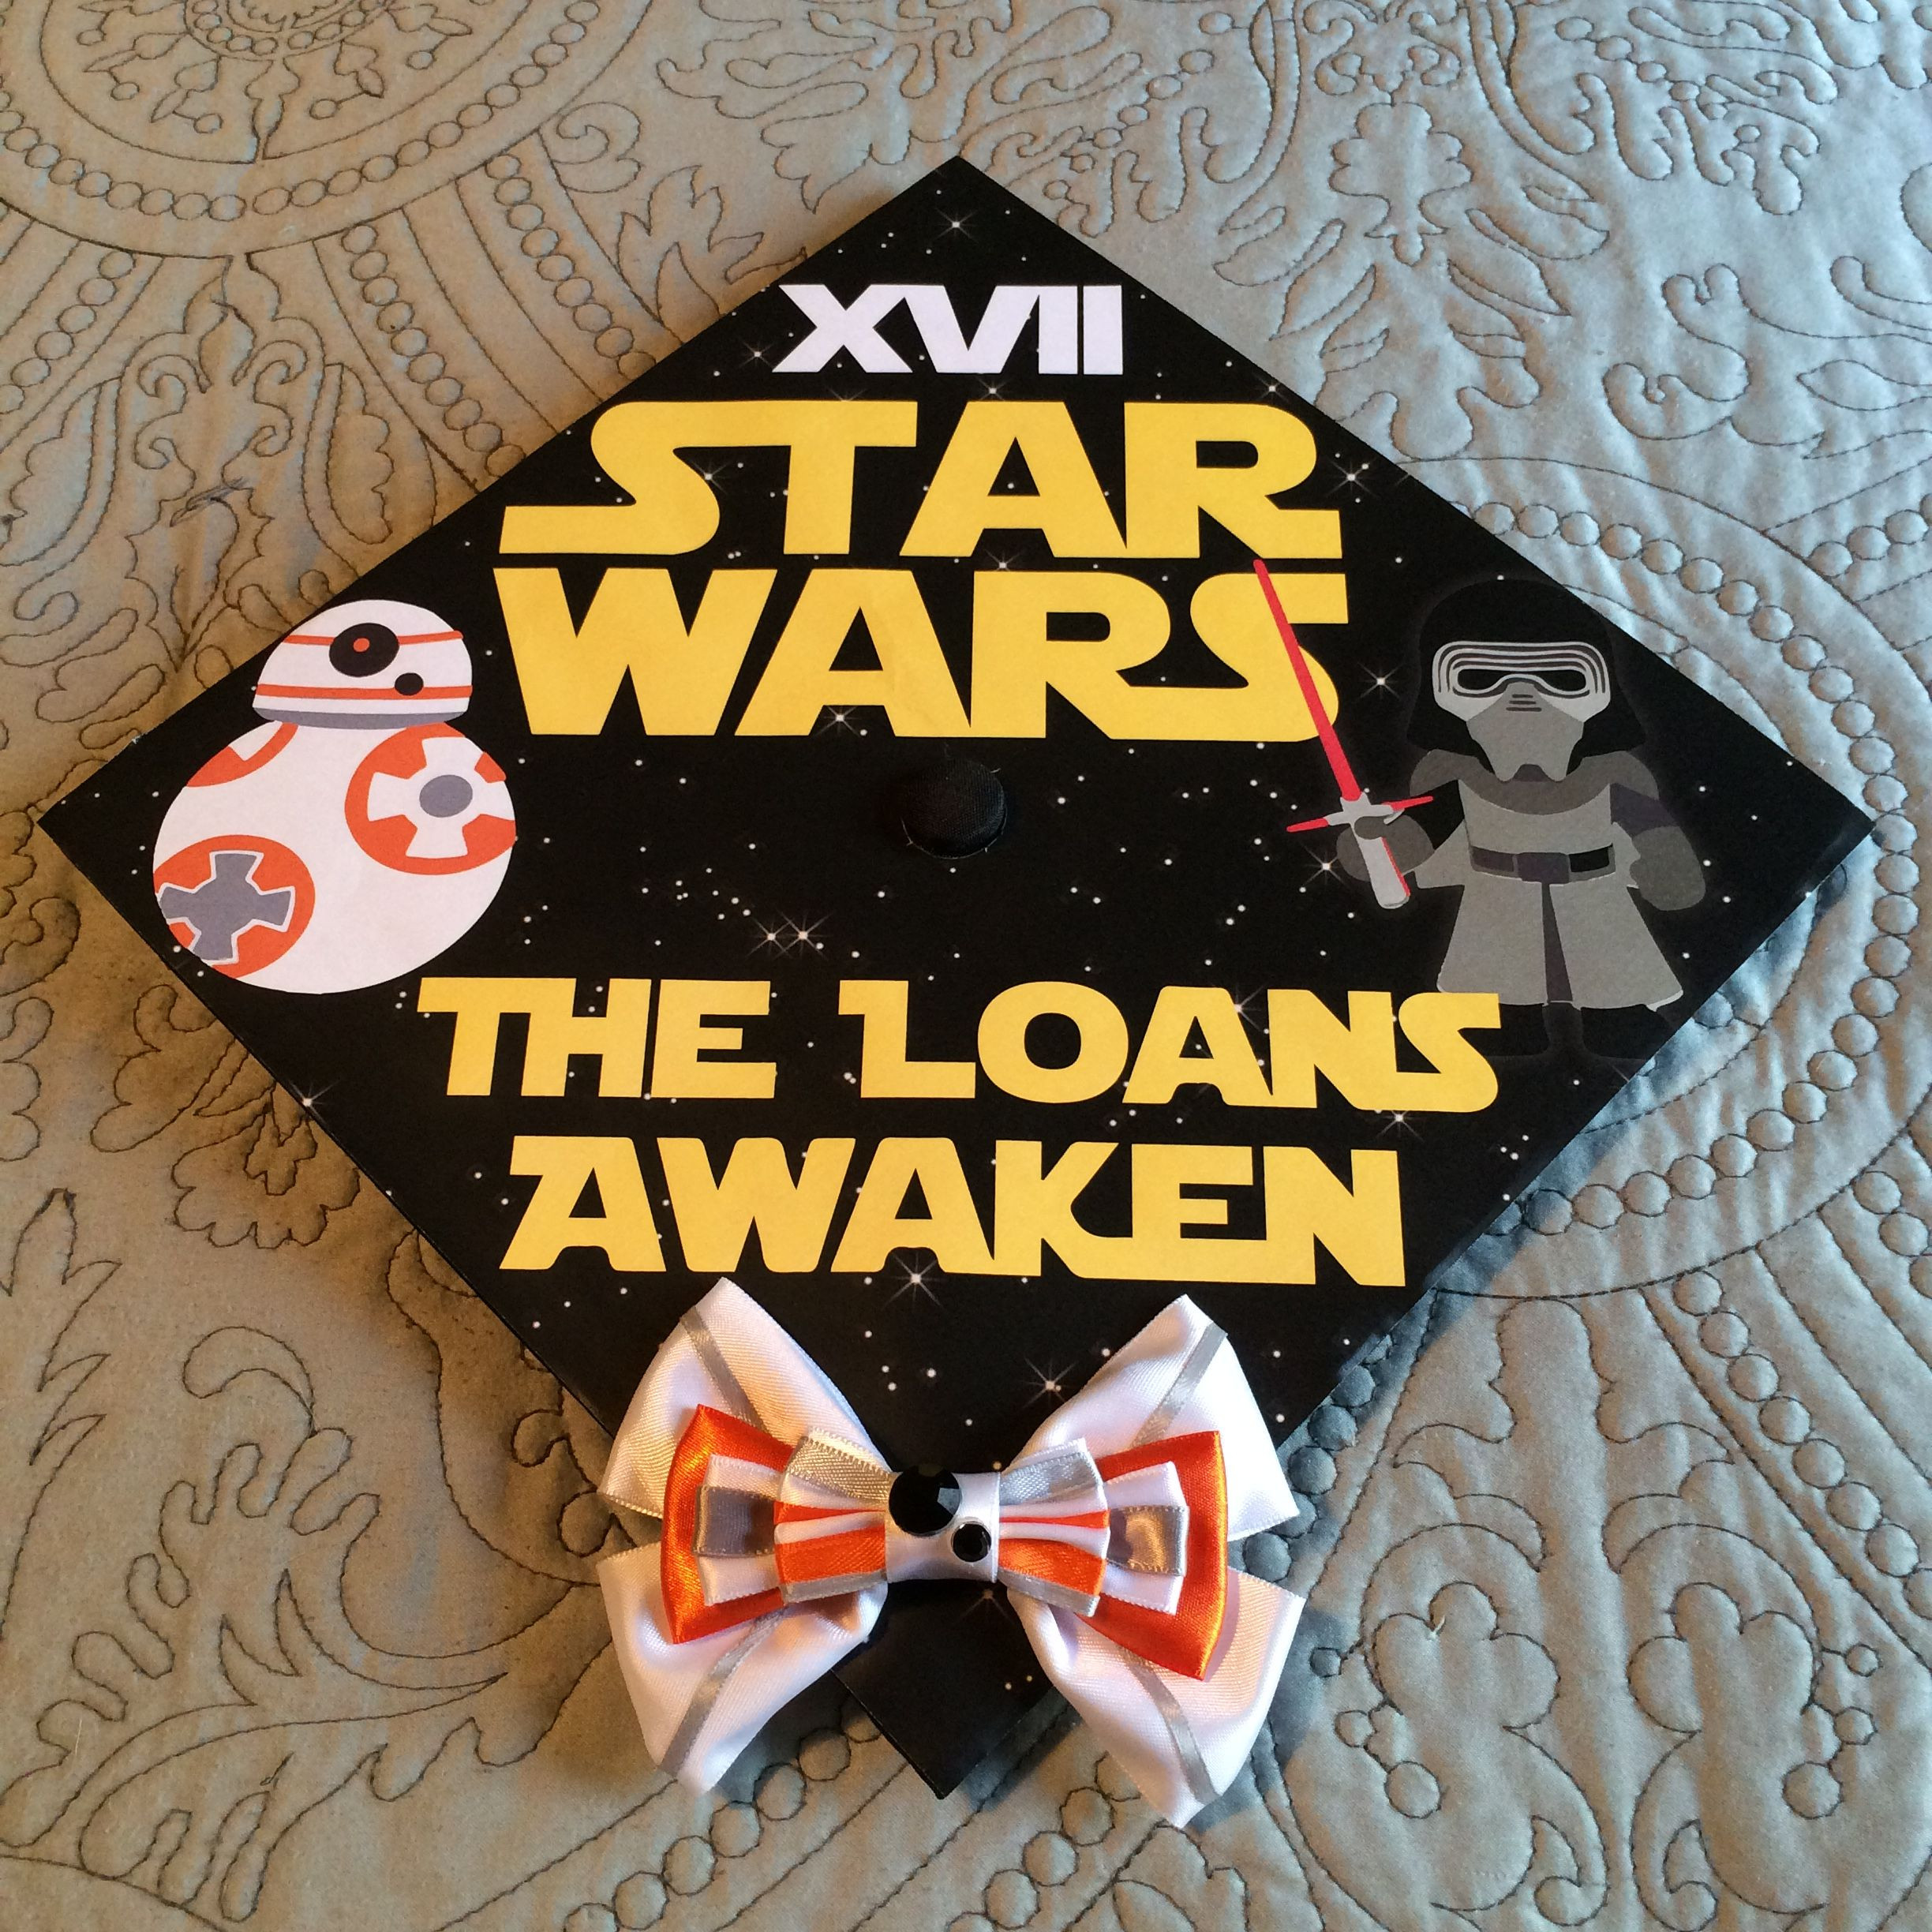 Star Wars Graduation Quotes
 Star Wars graduation cap Star Wars XVII 17 The Loans